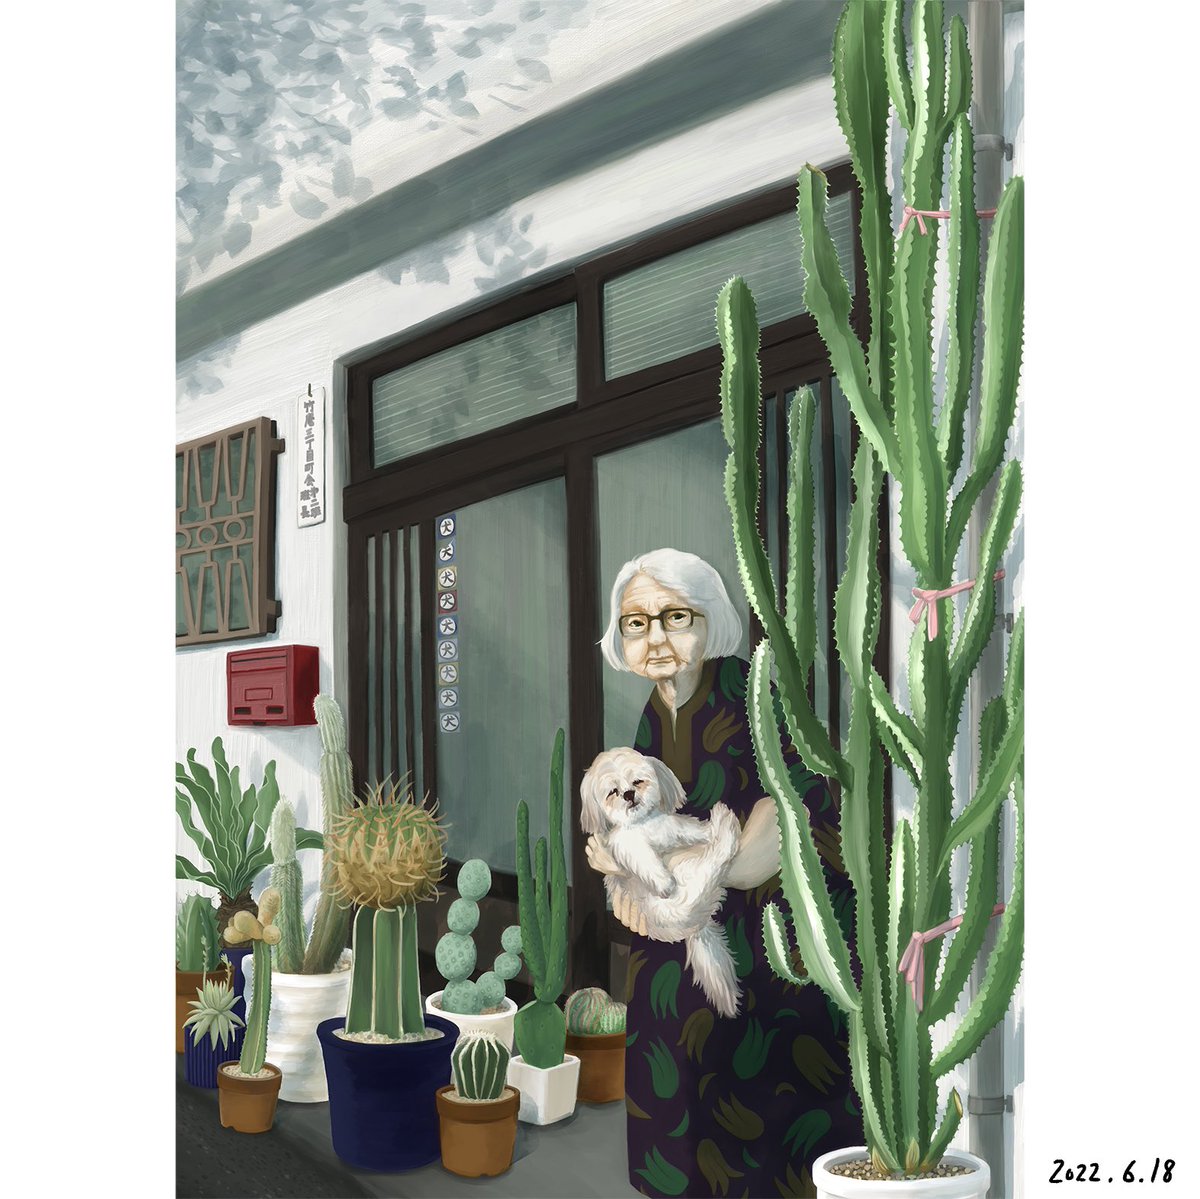 去年描いたサボテンの絵を描き直しました。ここ数ヶ月、描き方を変えようと格闘して、やっと少し楽しくなってきたかんじ。
#illustration #イラスト #cactus #pottedgarden #succulentplant #サボテン #鉢植え #多肉植物 #おばあちゃん #シーズー